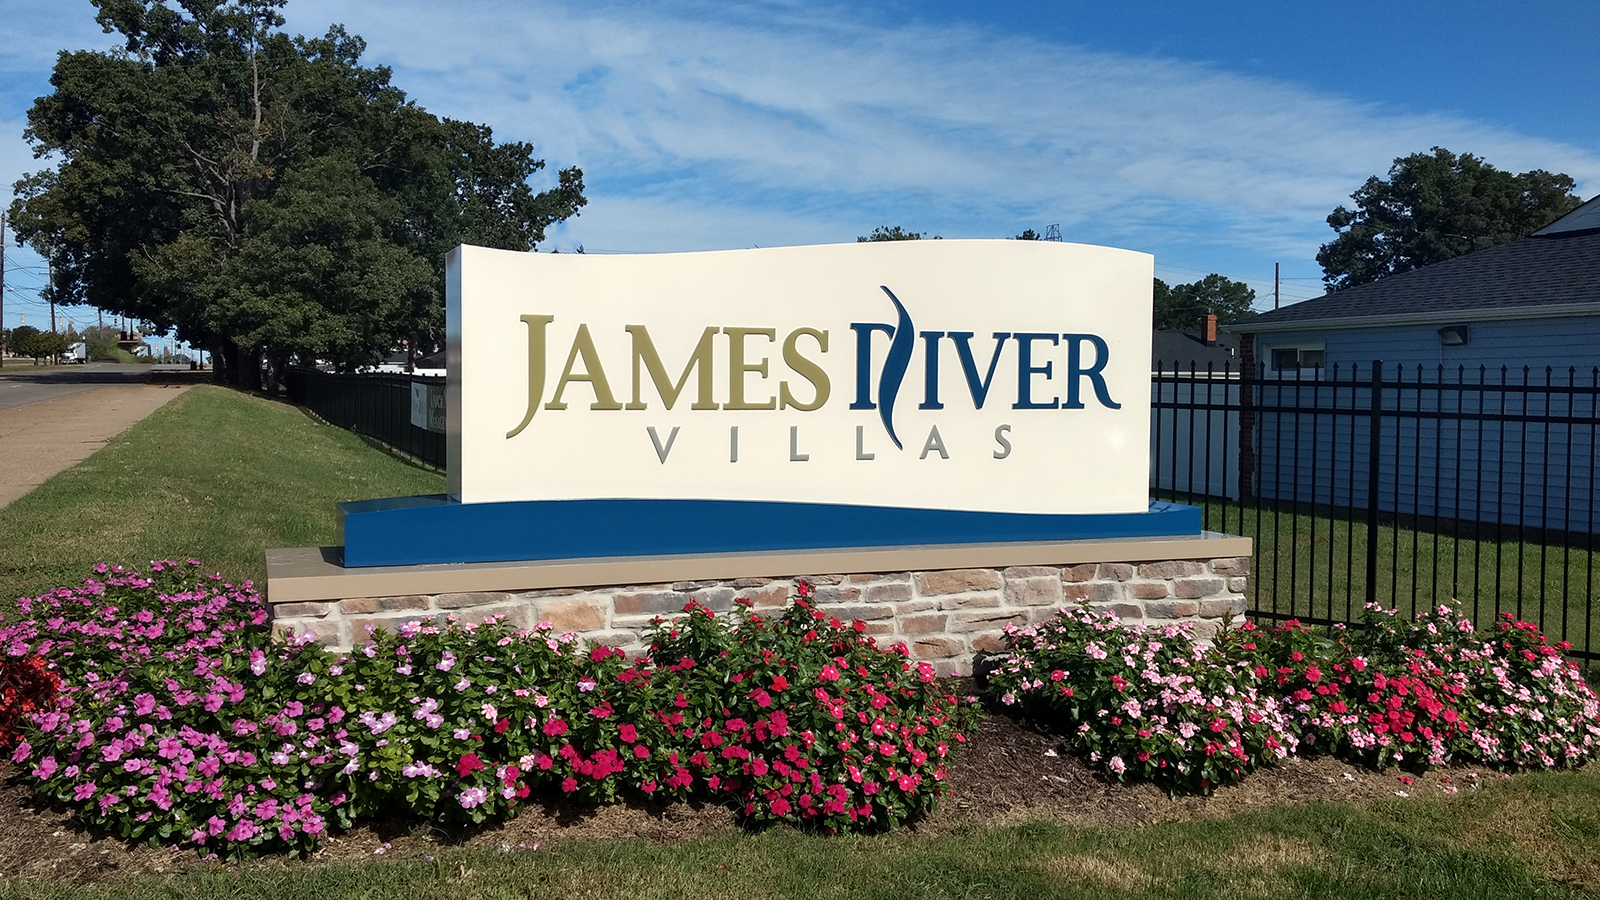 James River Villas Idf Pensign, James River Landscaping